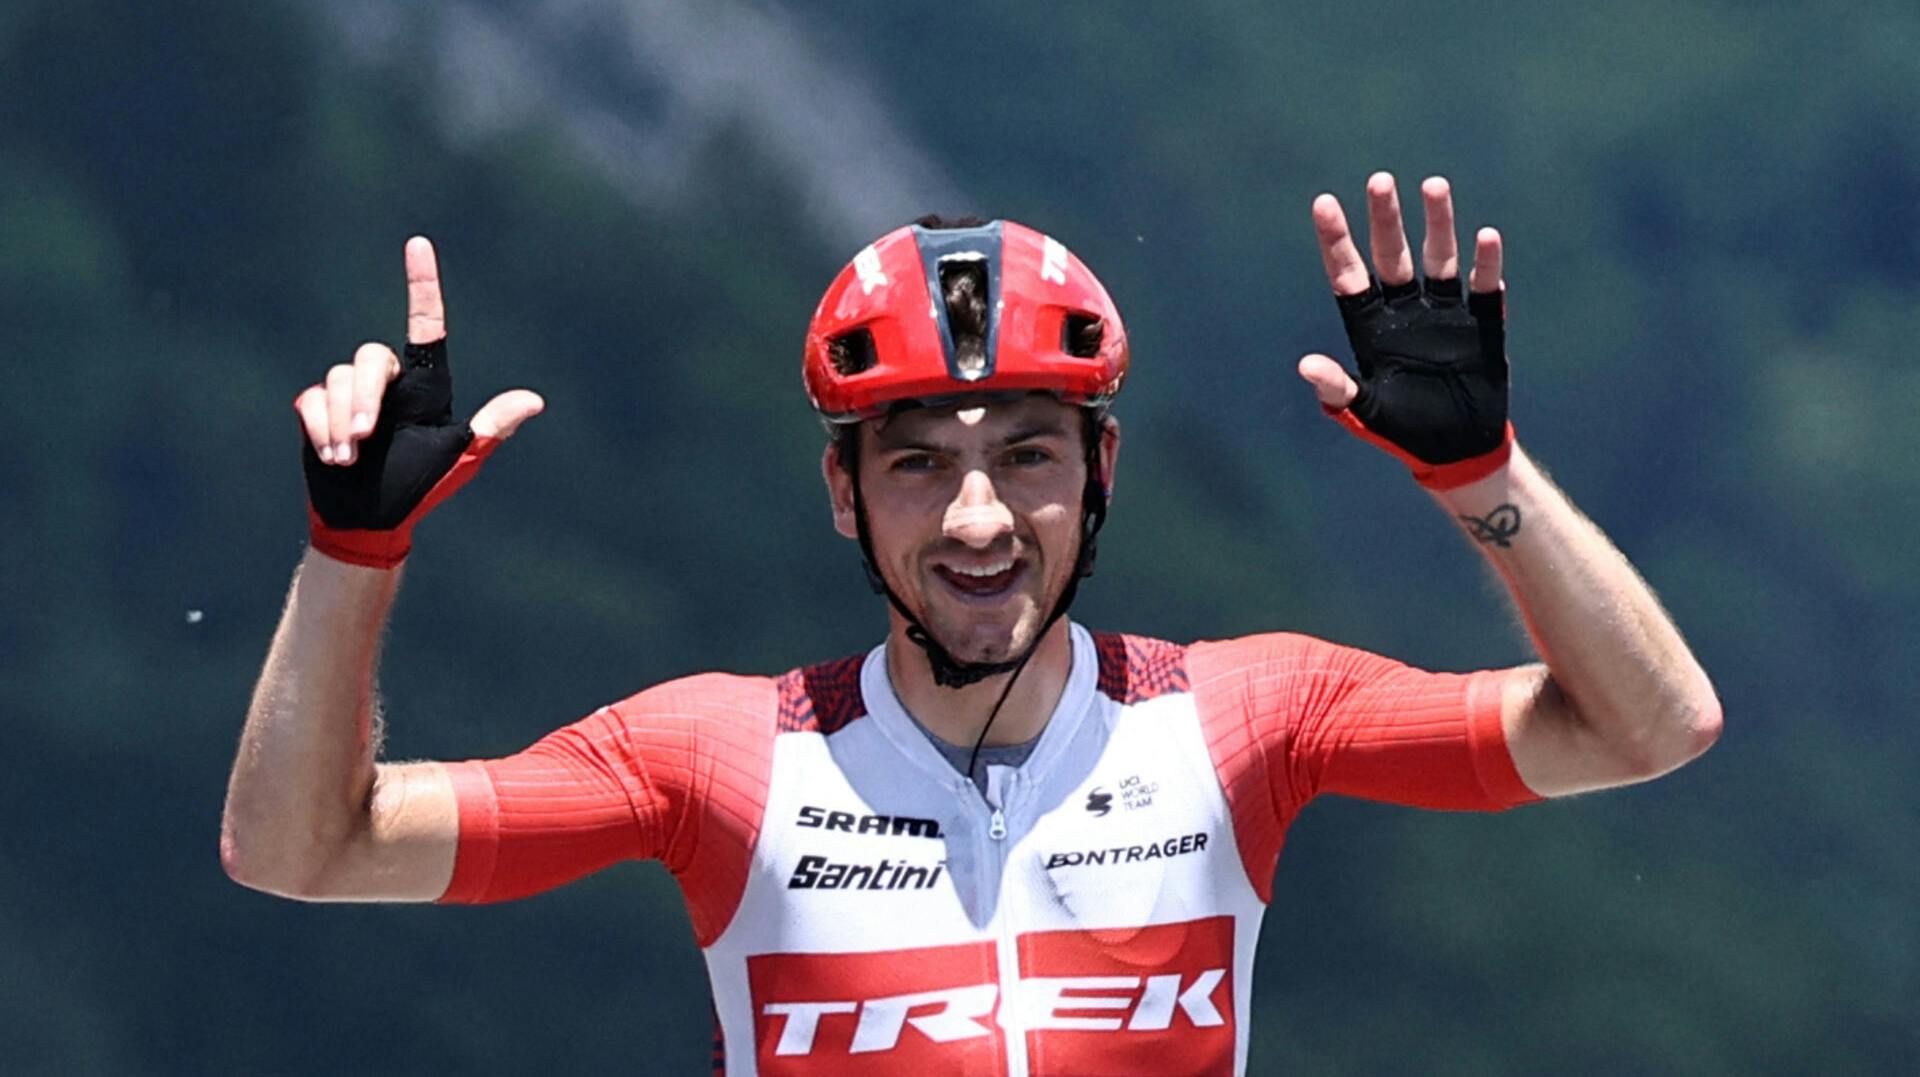 Giulio Ciccone vandt 8. og sidste etape af&nbsp;Critérium du Dauphiné. I et interview efter sejren fortalte han, at han skal giftes i næste uge.&nbsp;